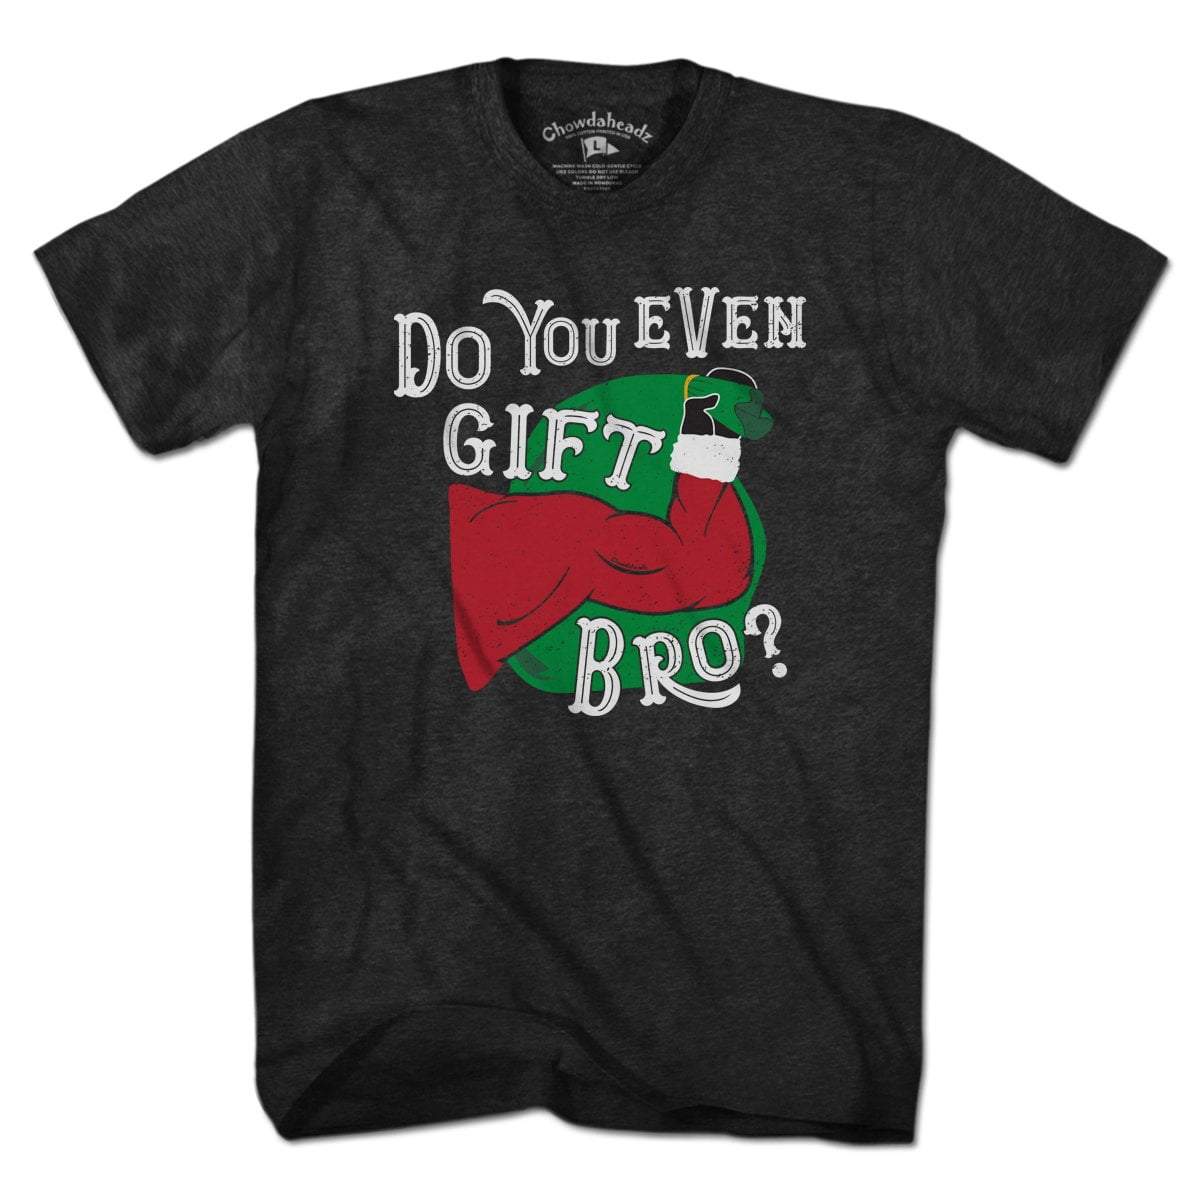 Do You Even Gift Bro? T-Shirt - Chowdaheadz